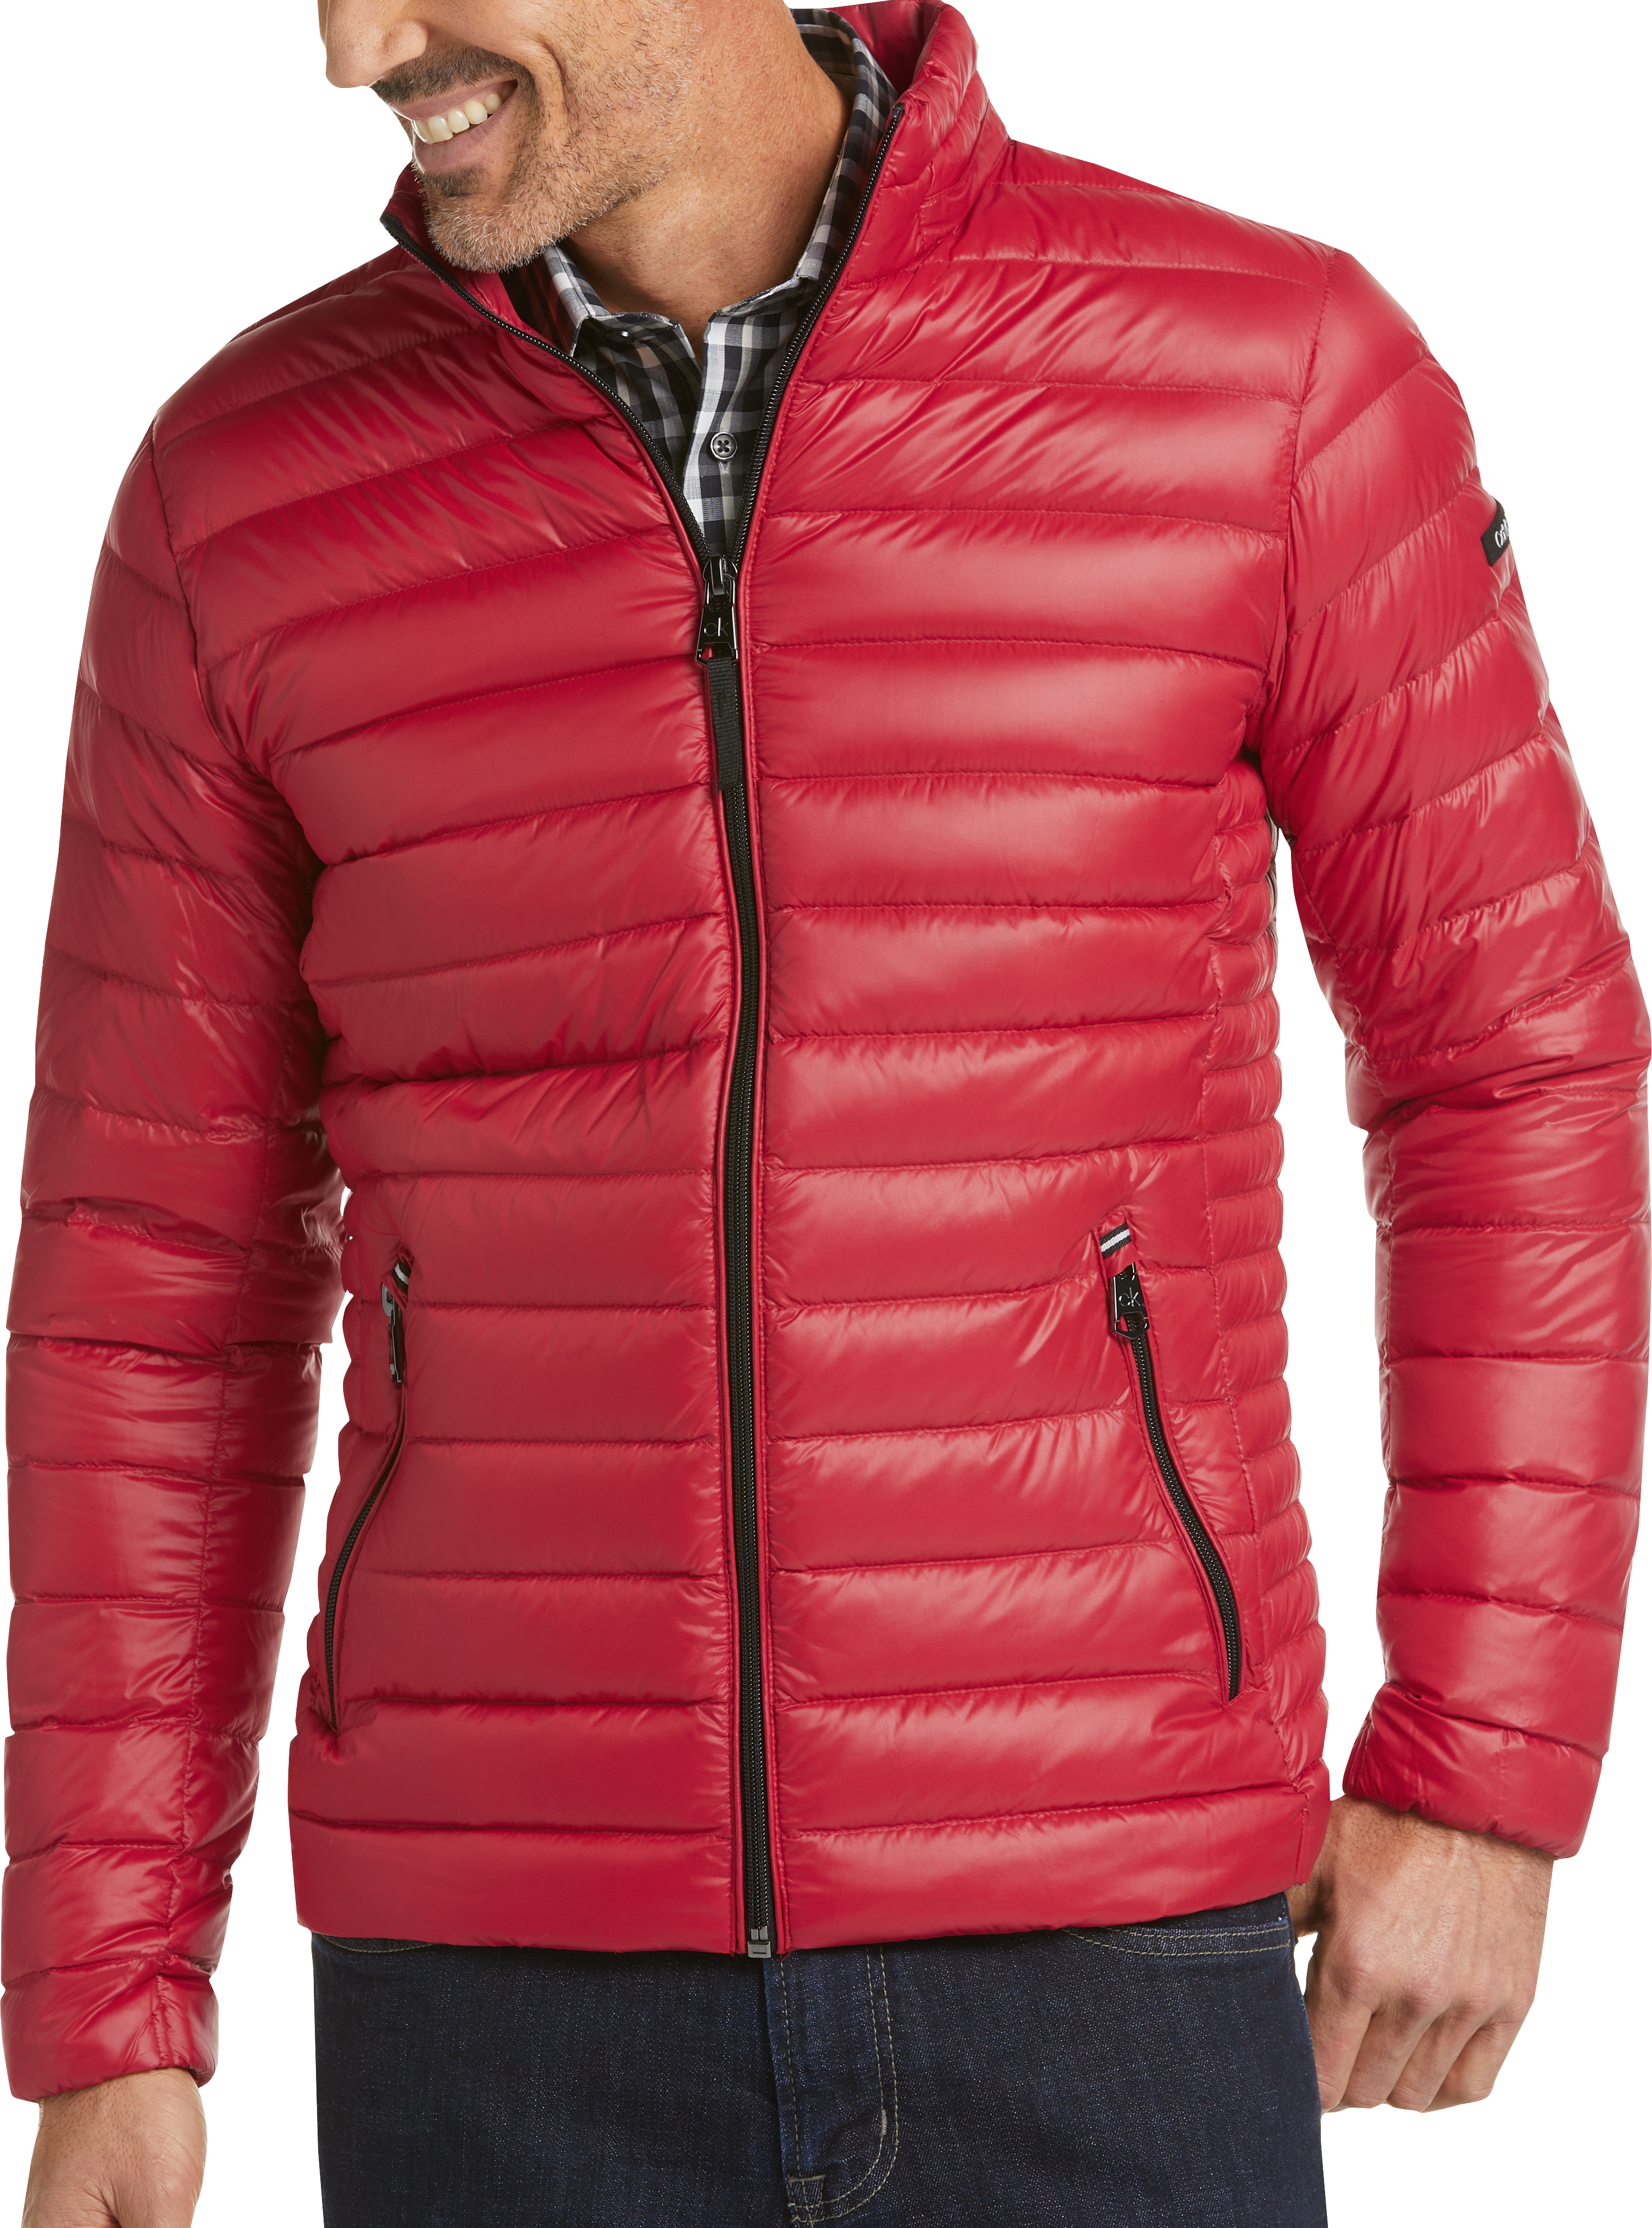 calvin klein puffer jacket red